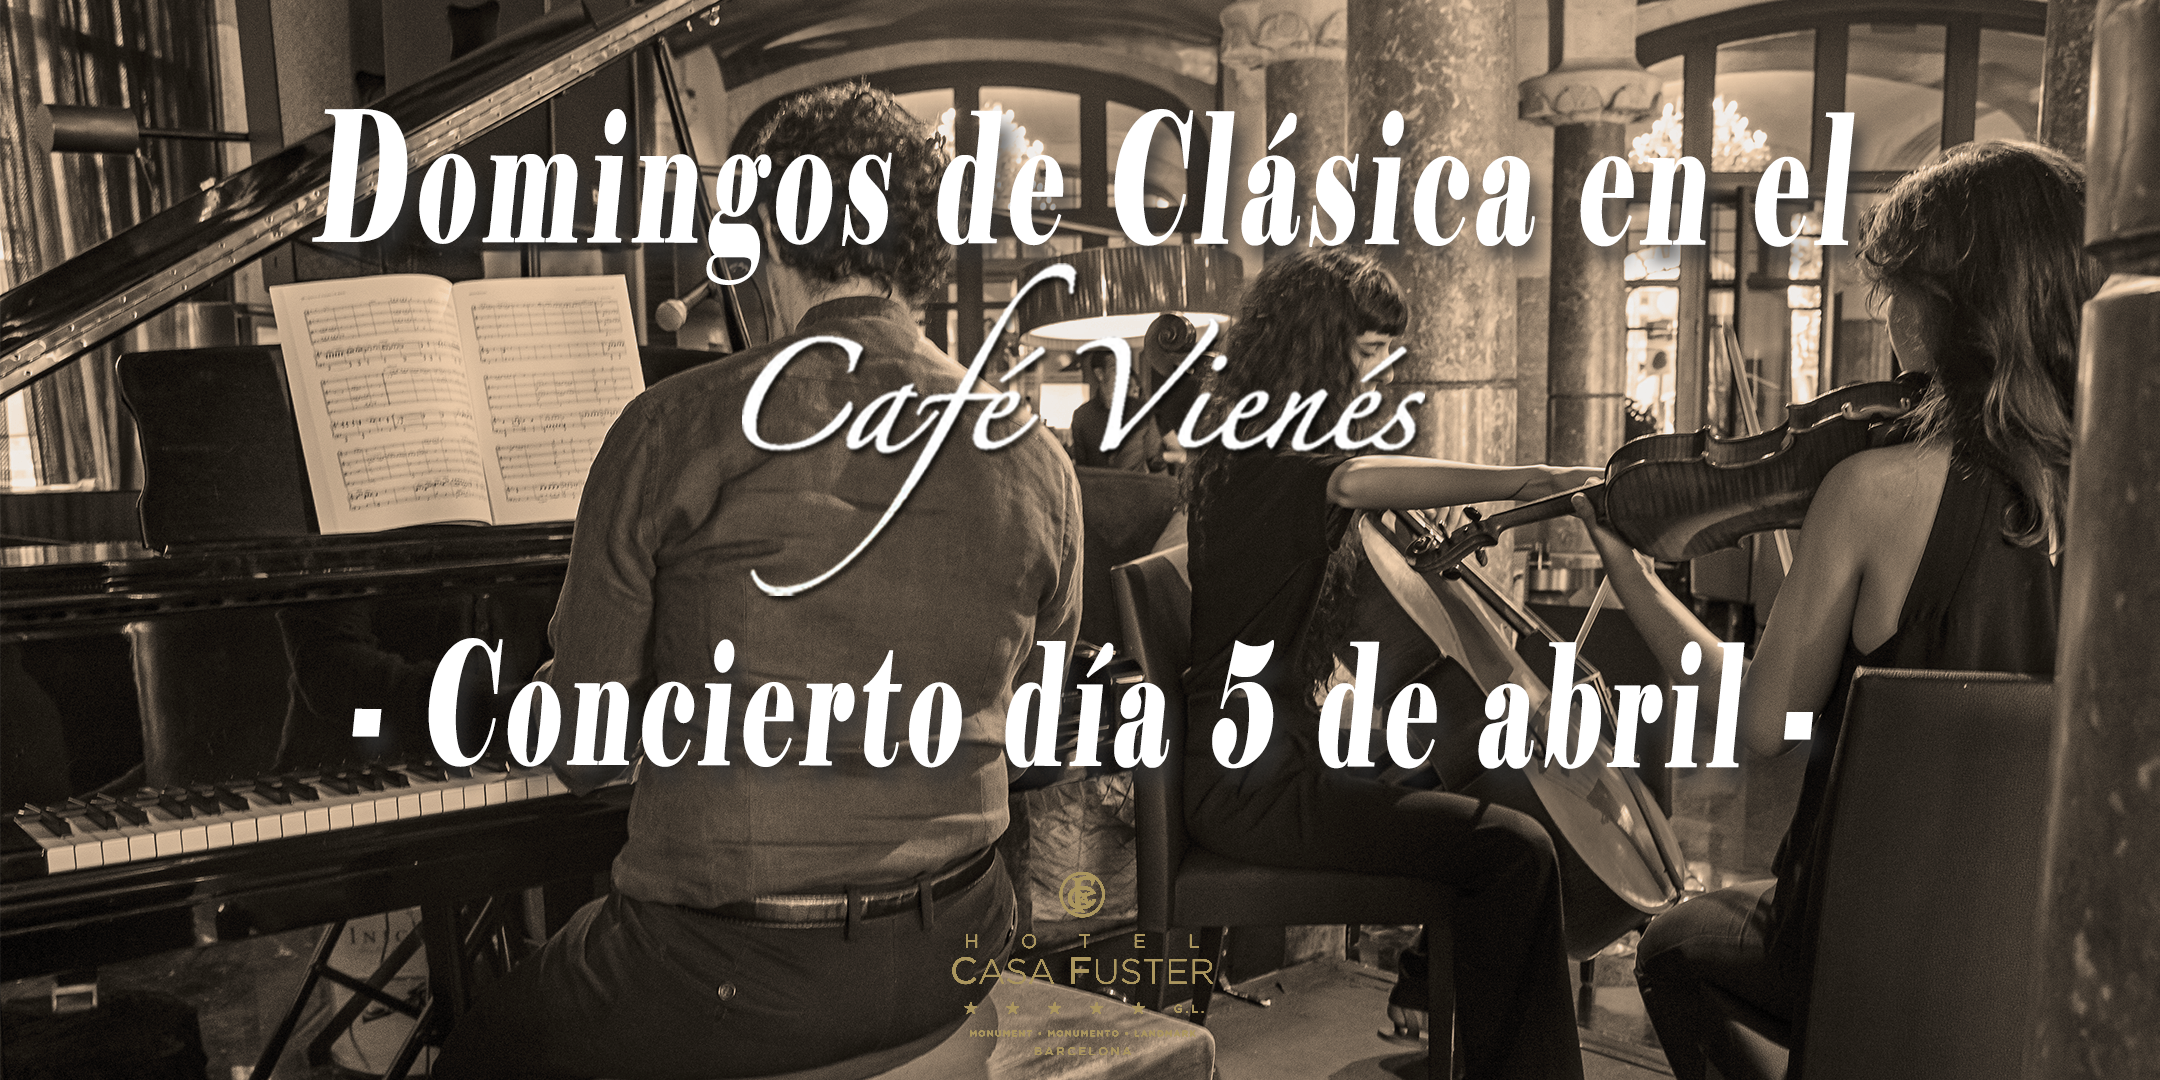 Domingos de Clásica en el Café Vienés: Concierto 5 de abril 2020